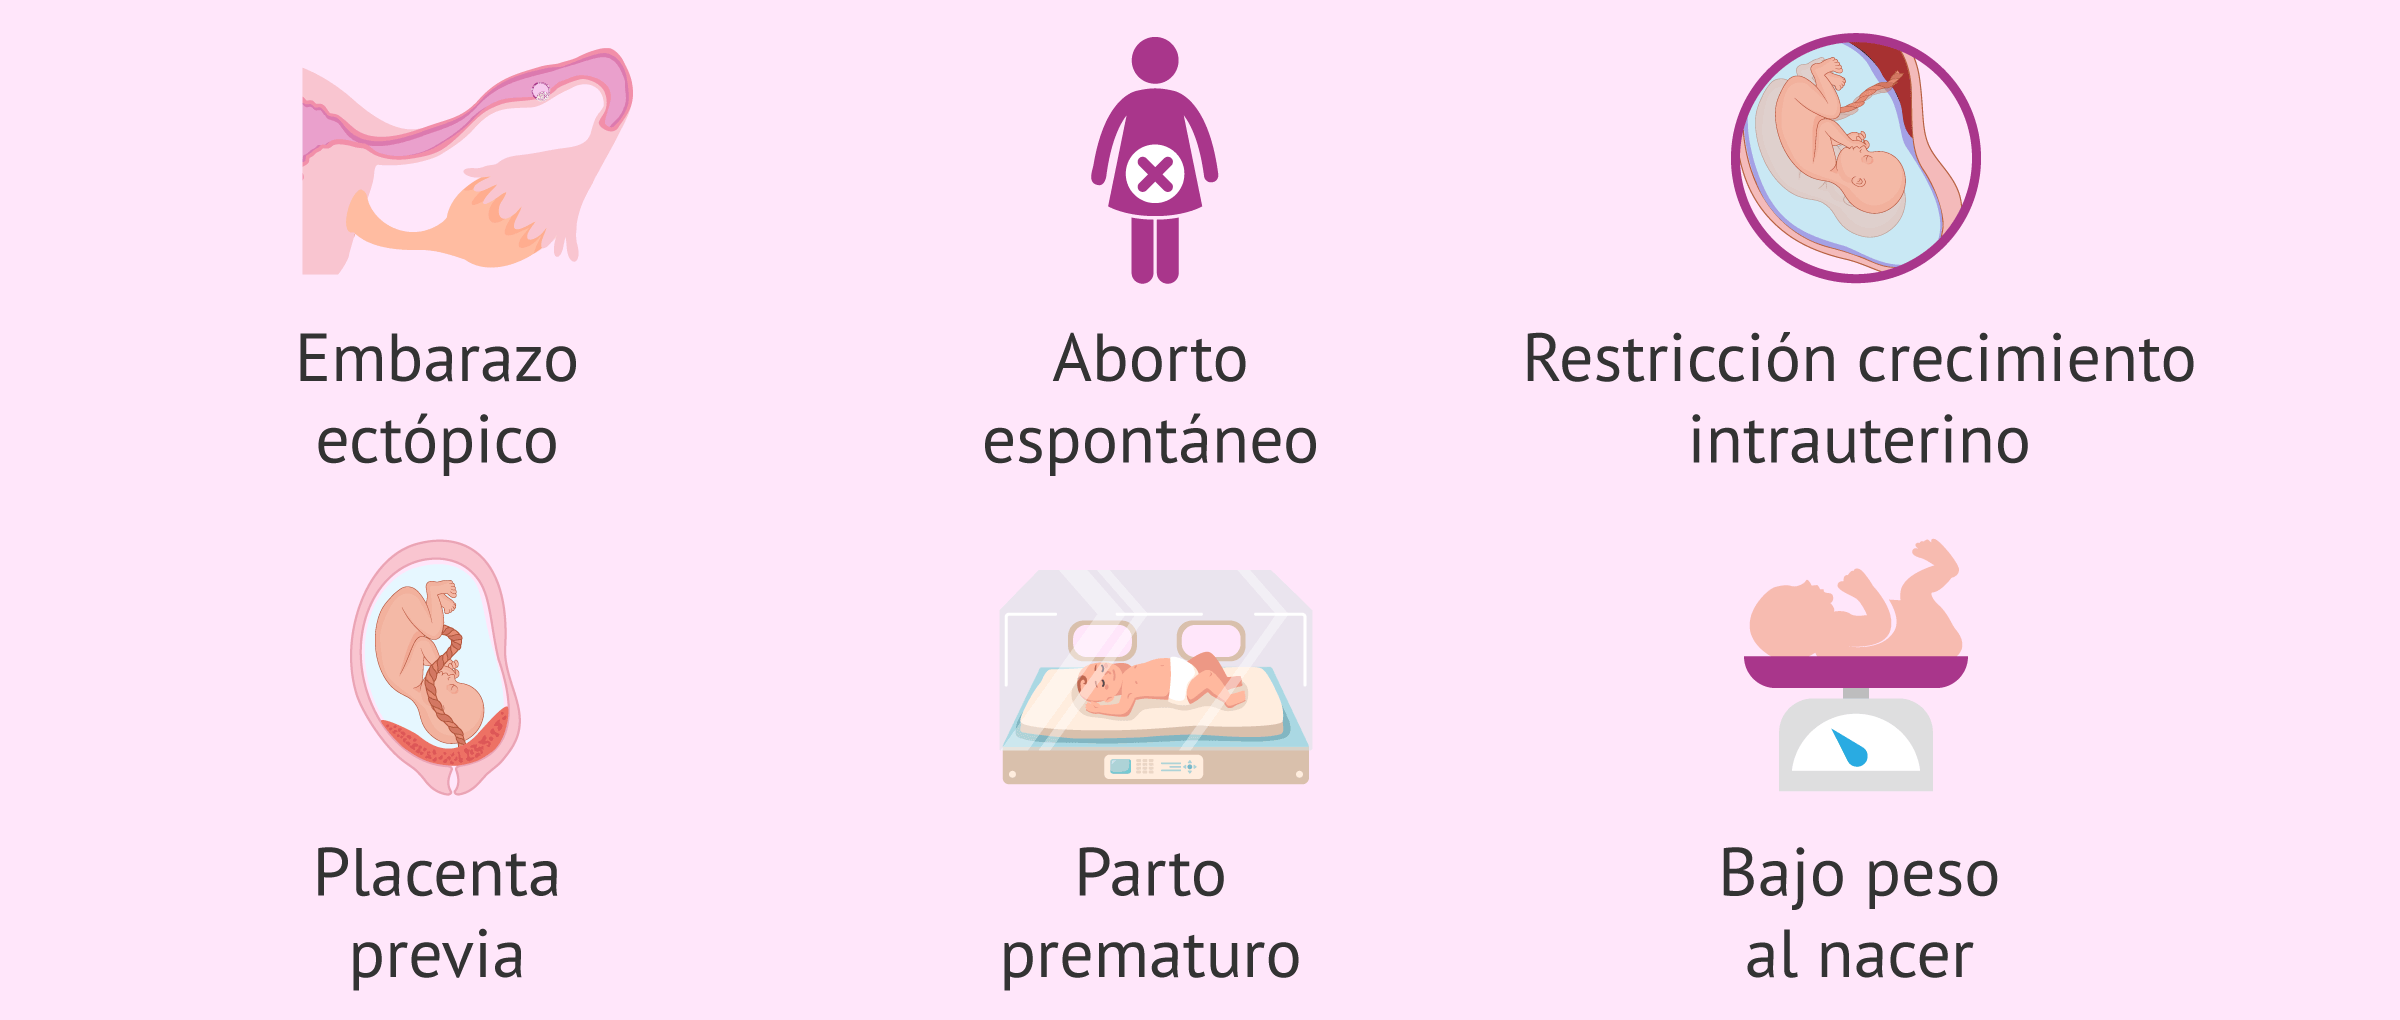 ¿Qué complicaciones trae fumar para el embarazo?